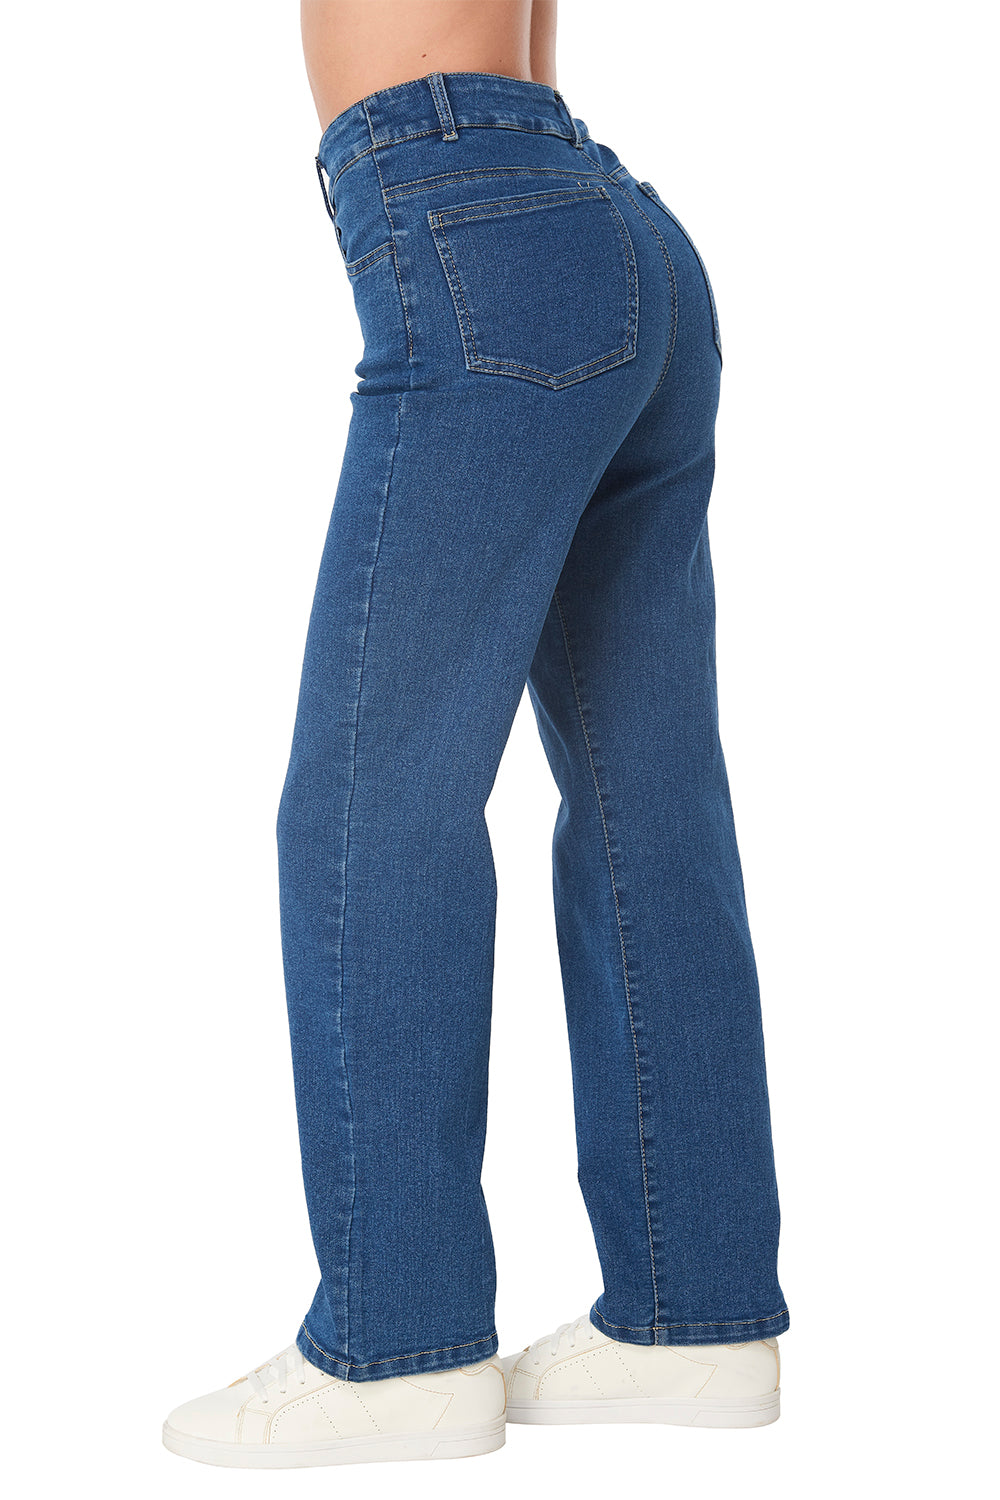 Jeans Azul Mezclilla Rectos: Tiro Alto, Stretch y Cómodos